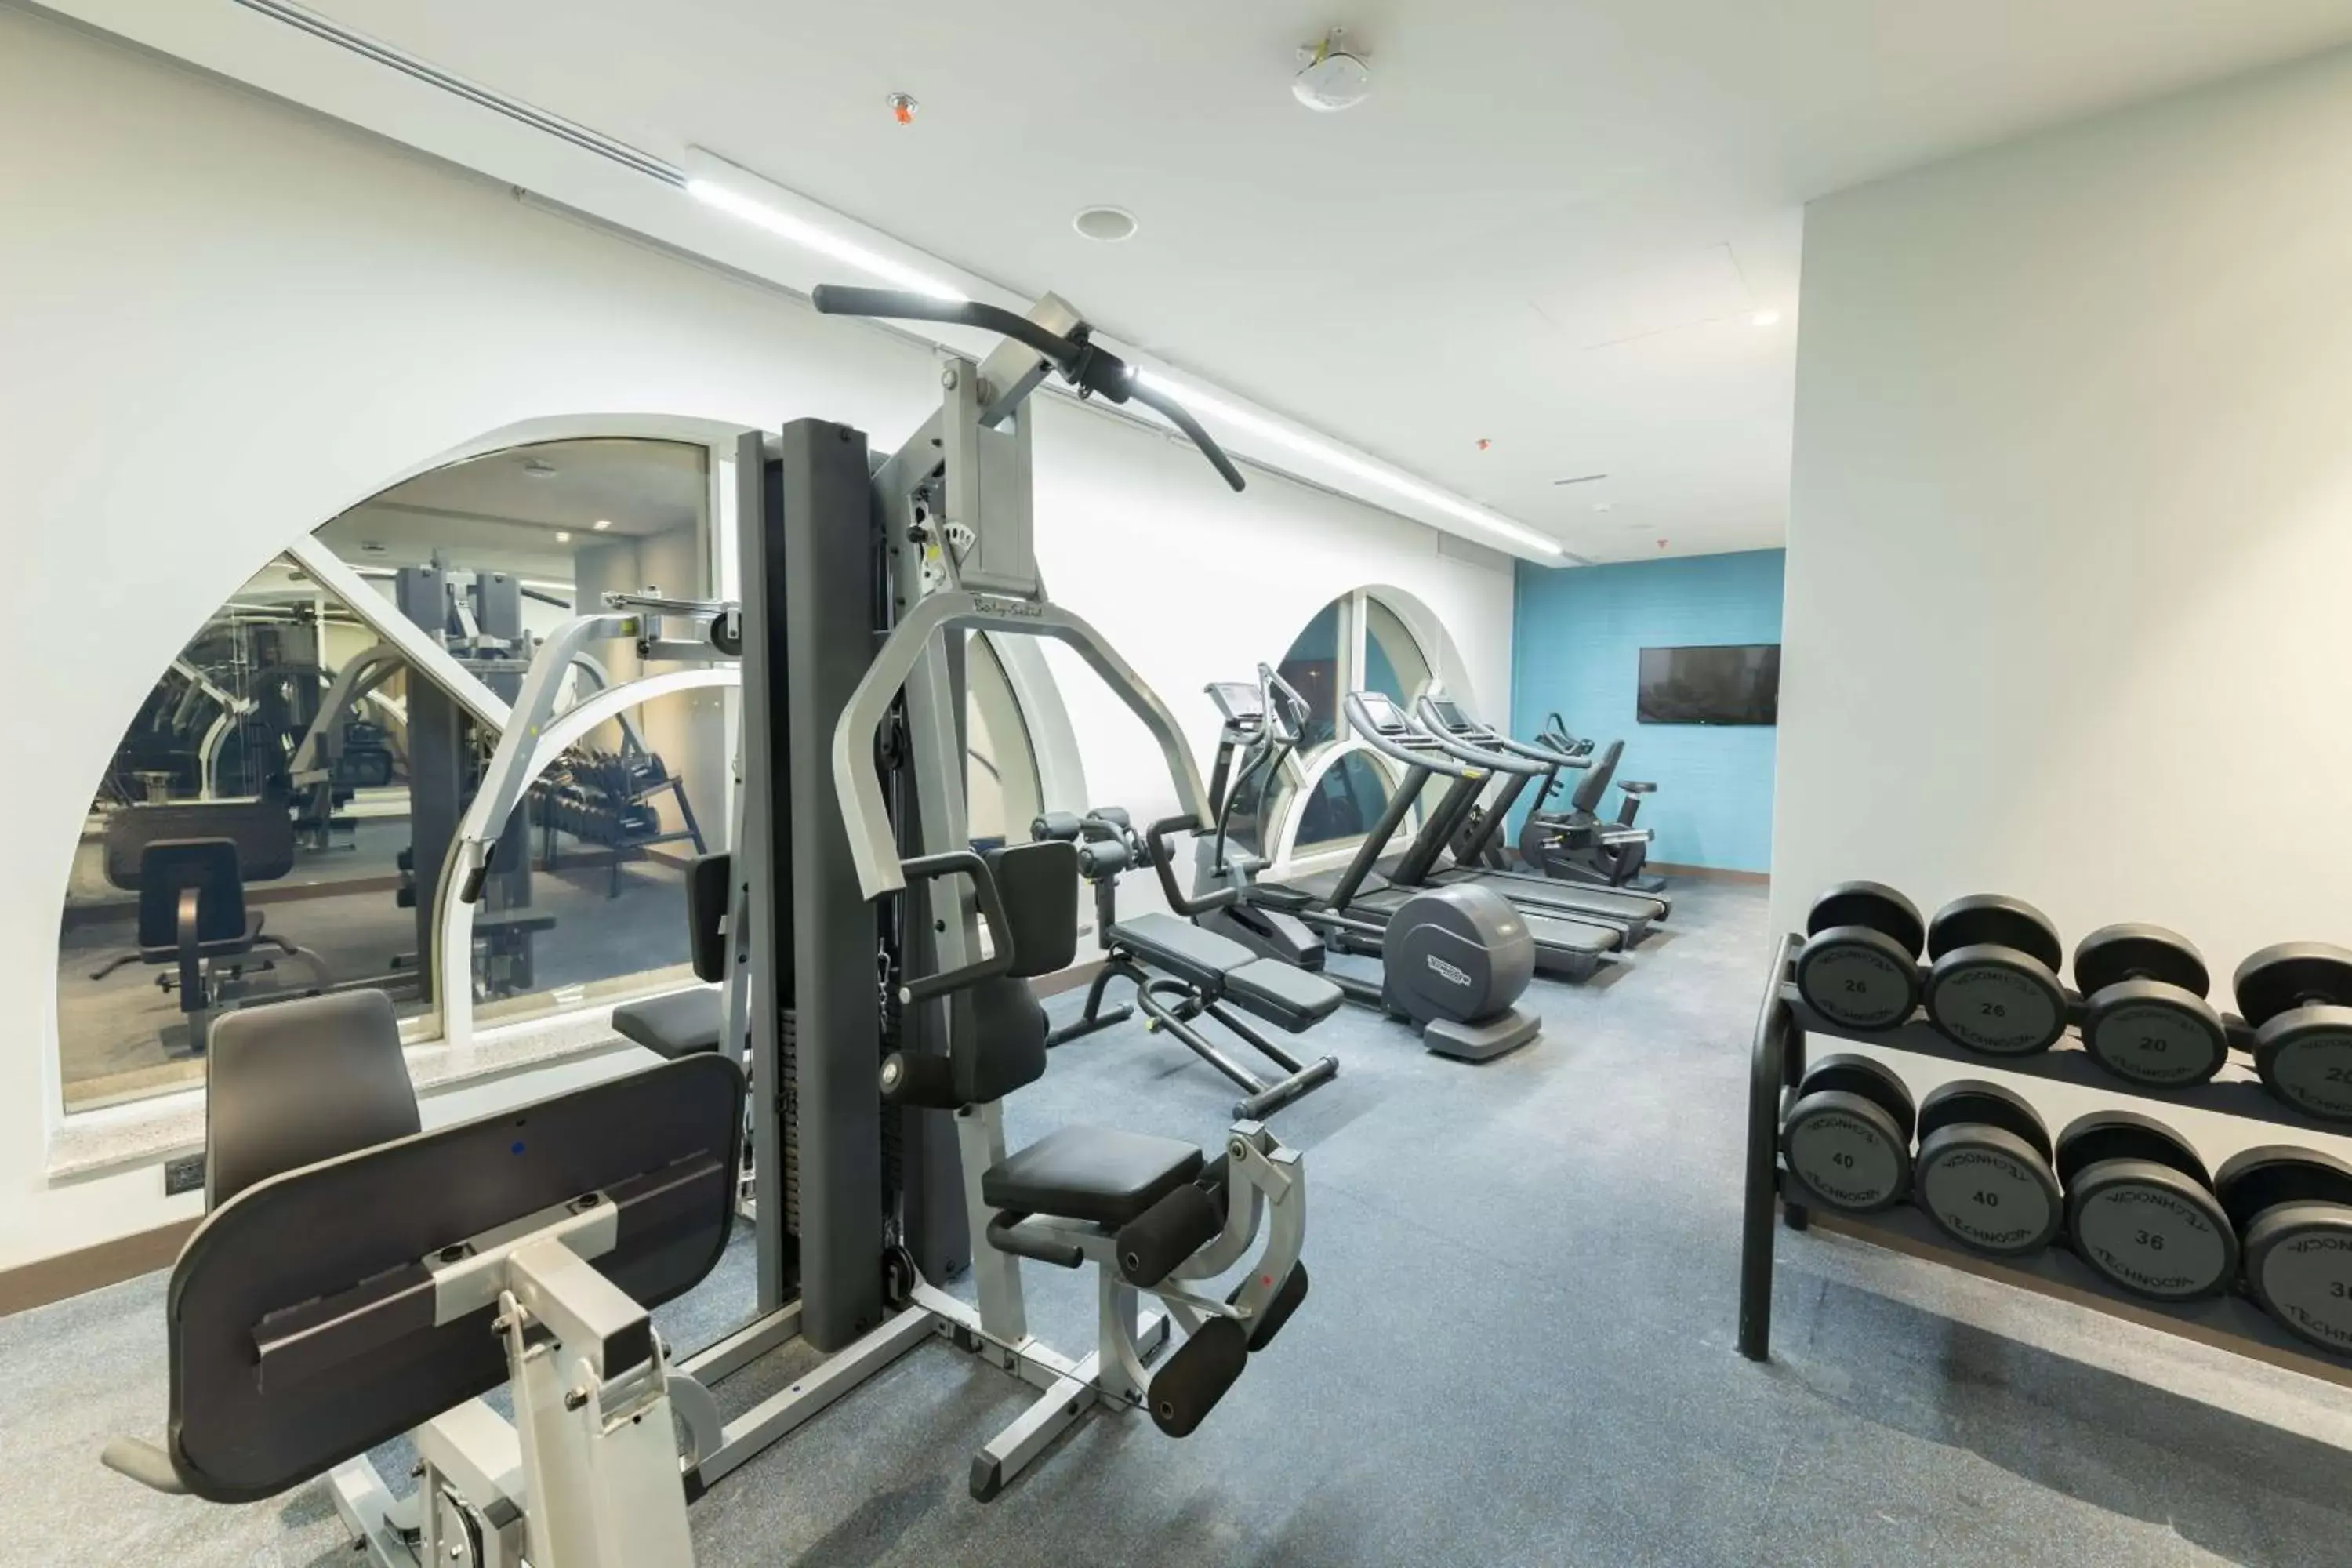 Spa and wellness centre/facilities, Fitness Center/Facilities in Radisson Blu Hotel, Jeddah Corniche